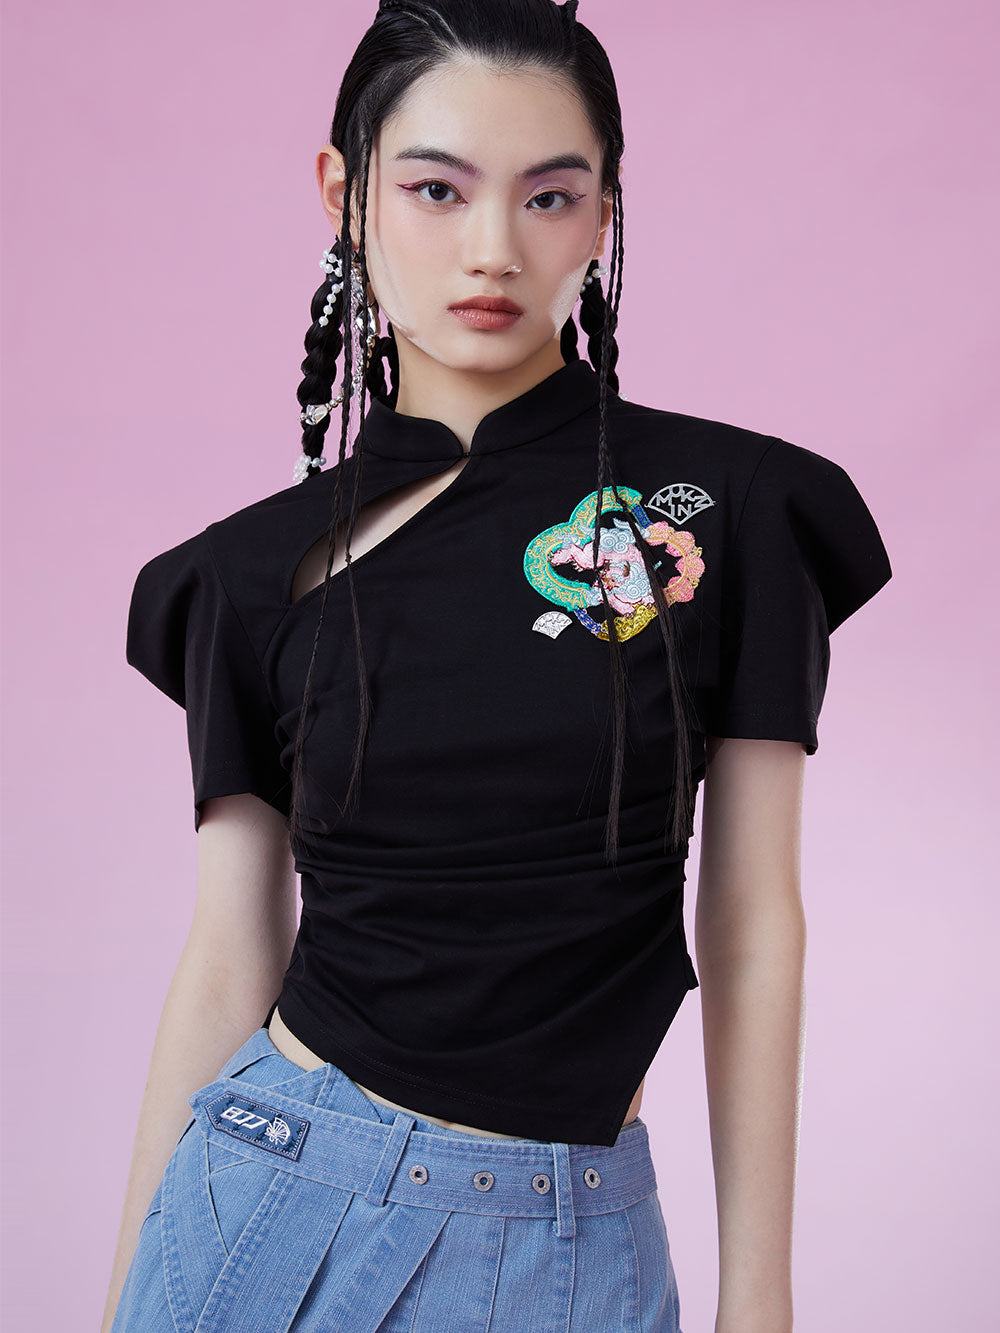 MUKZIN New Chinese Style Slim Original Eye appeal T shirts